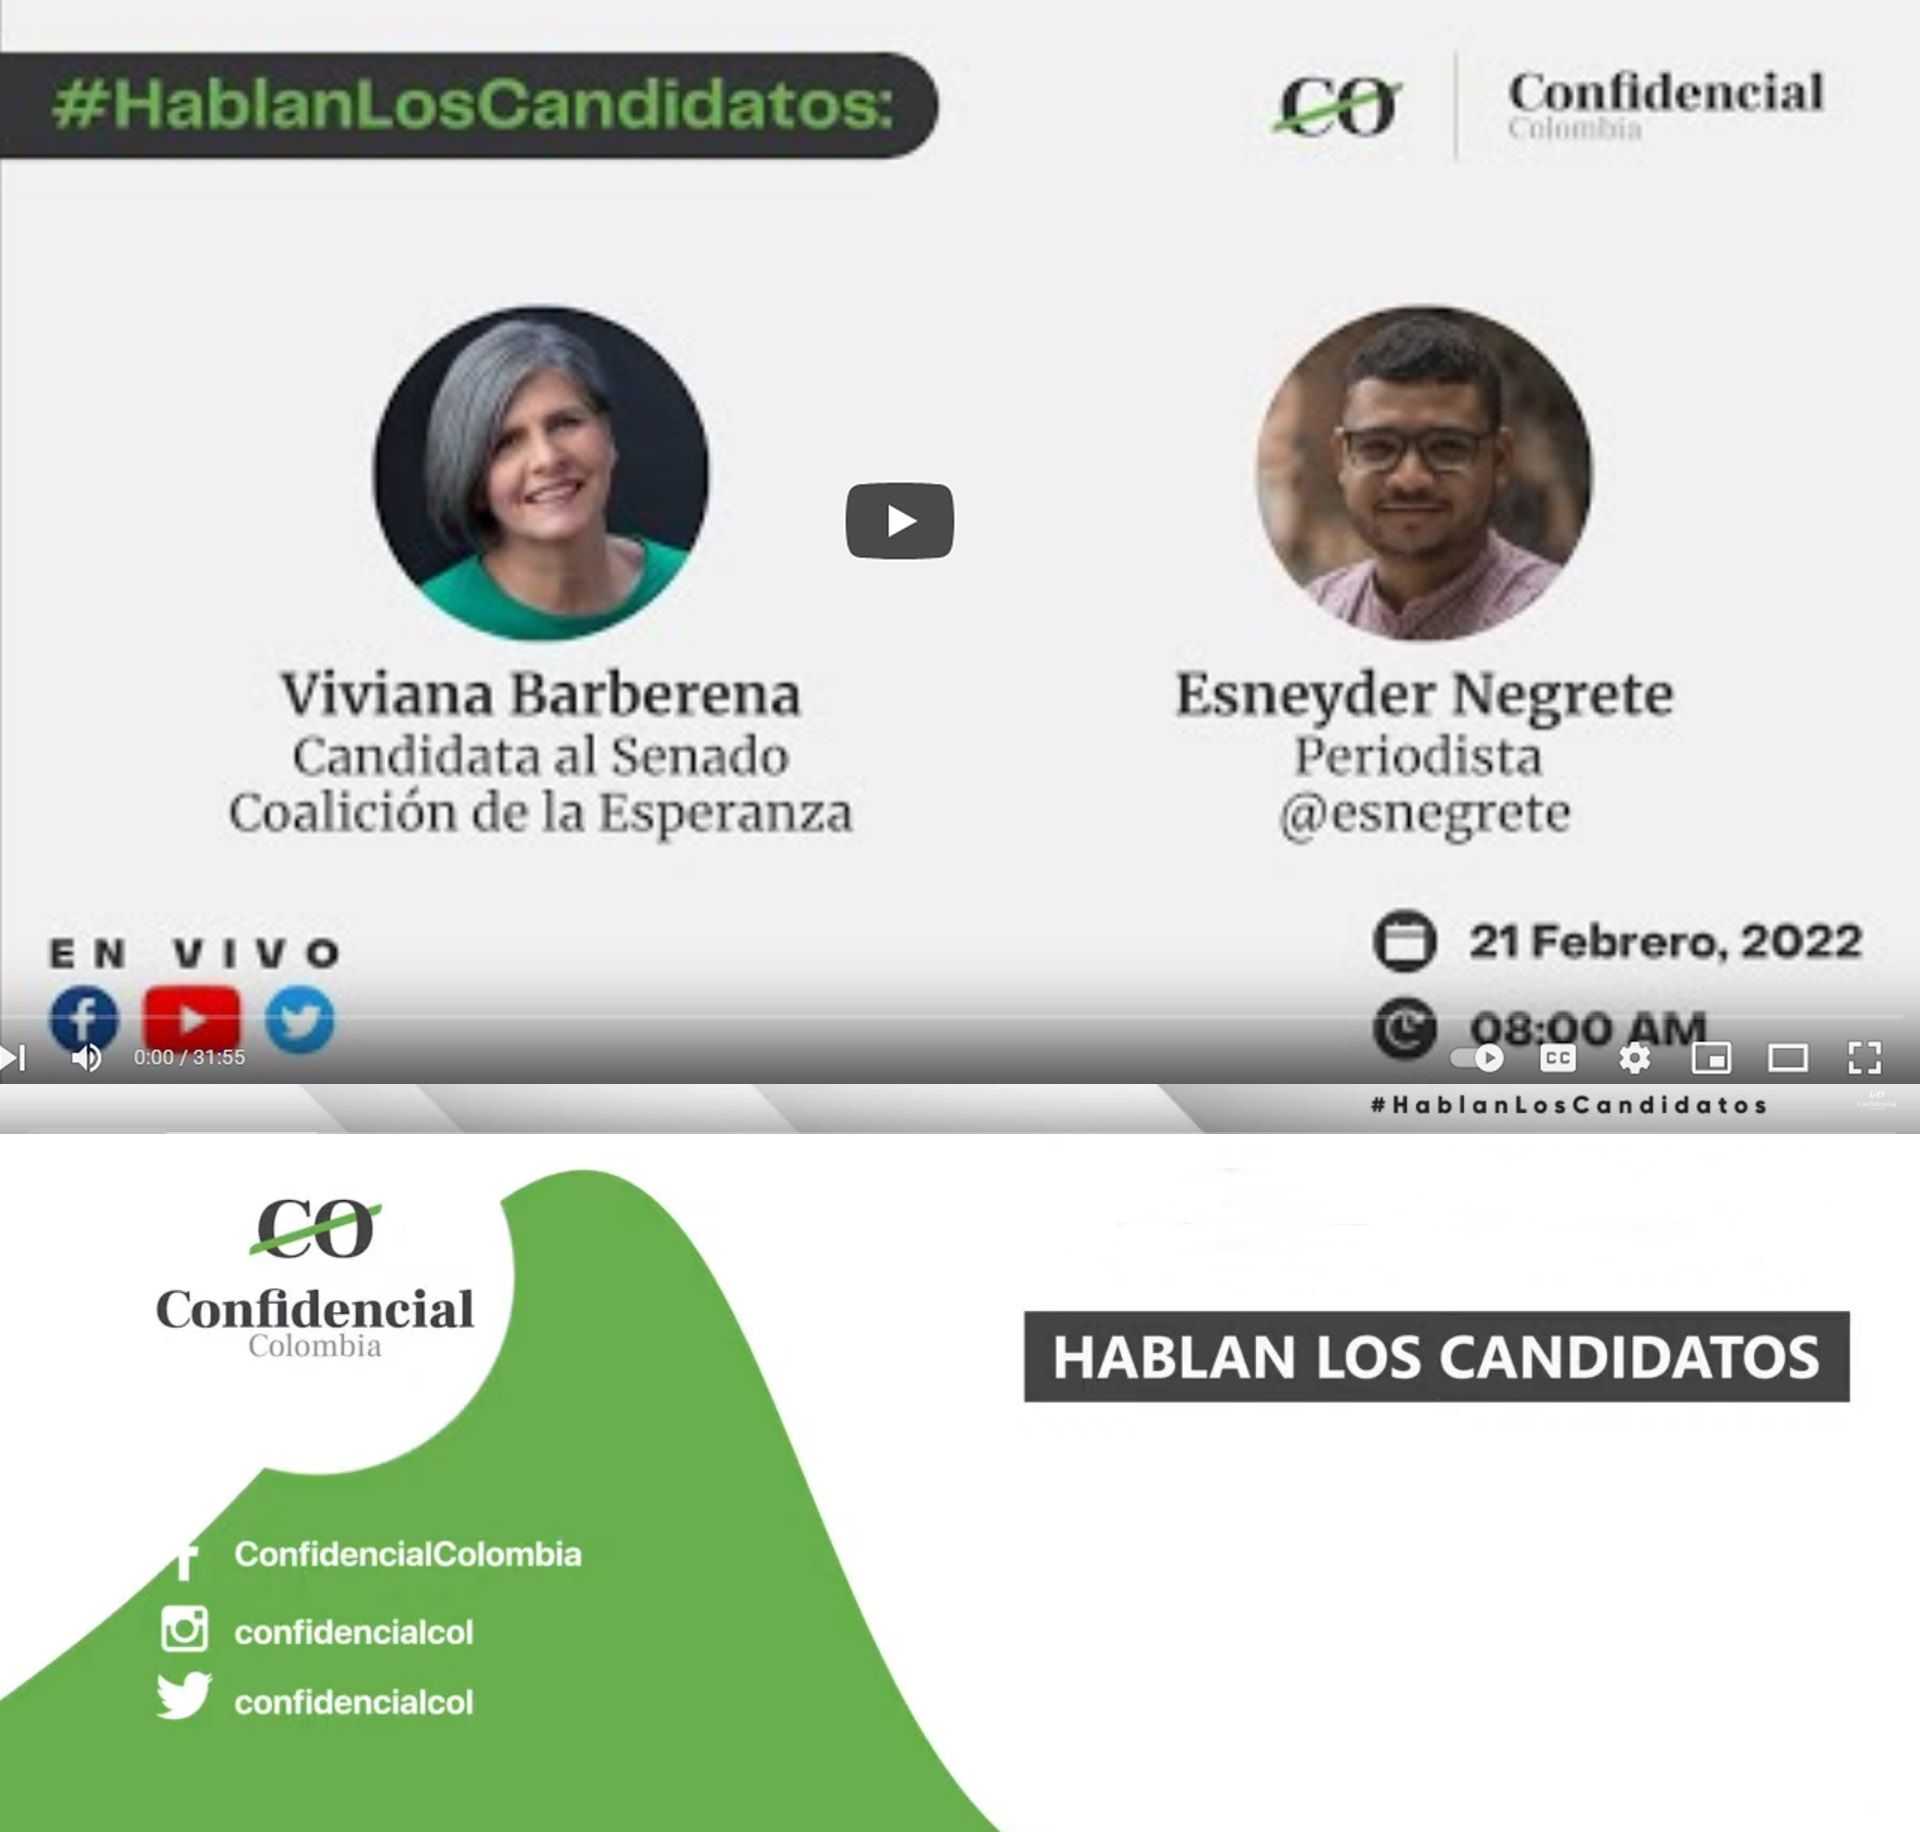 #HablanLosCandidatos: Viviana Barberena candidata al Senado en la lista de la Coalición de la Esperanza- fuente: Confidencial Colombia